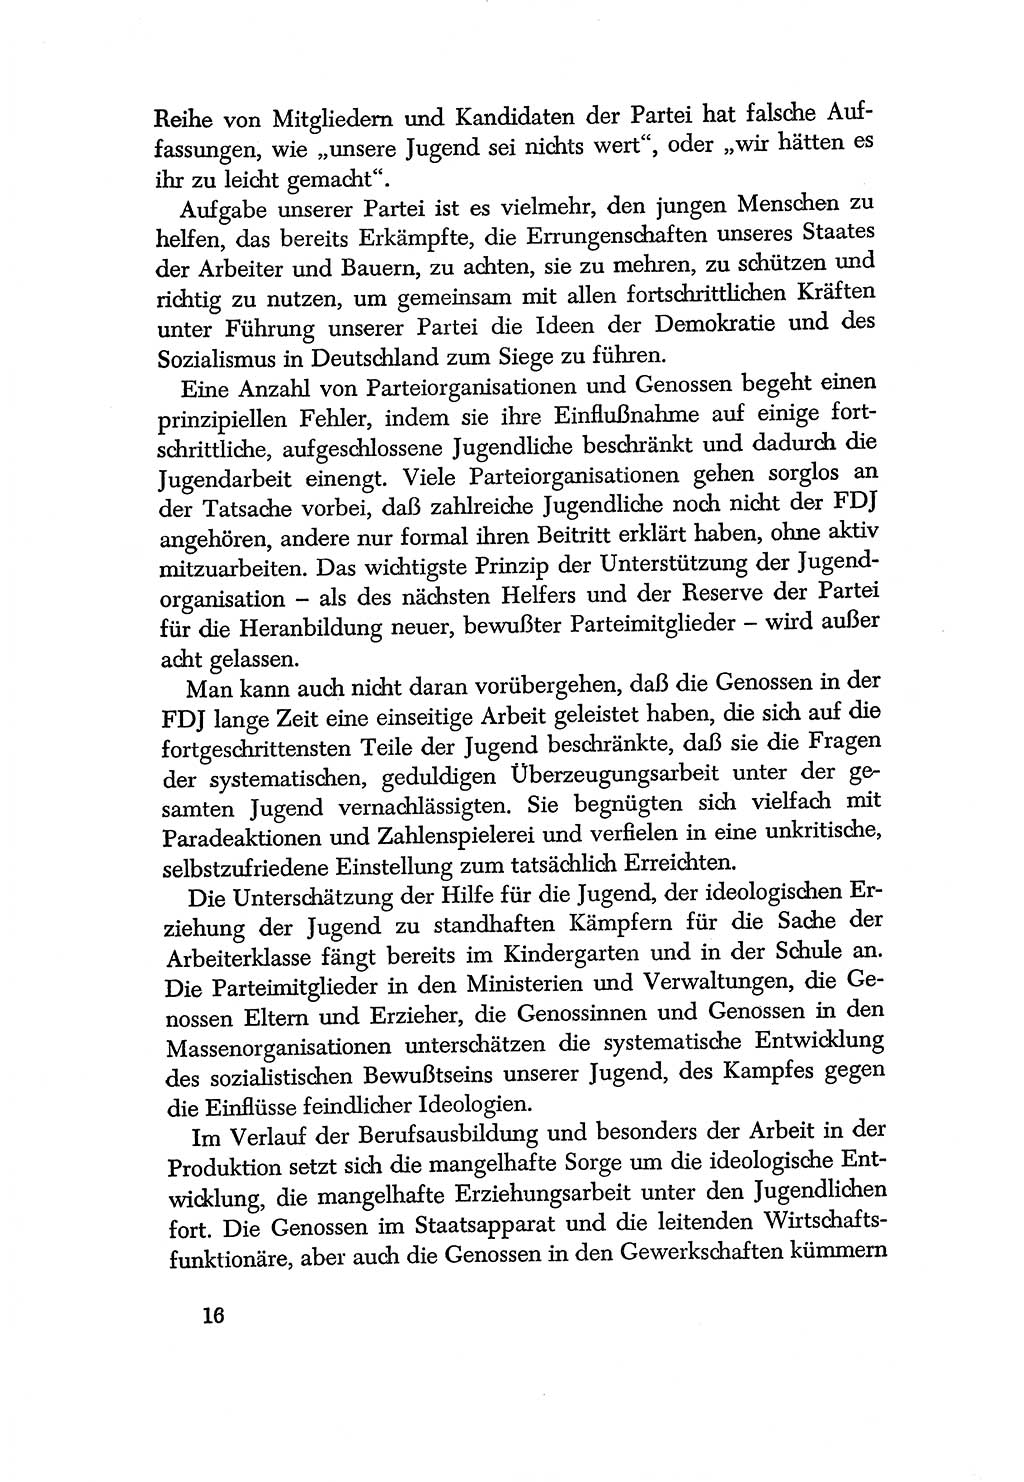 Dokumente der Sozialistischen Einheitspartei Deutschlands (SED) [Deutsche Demokratische Republik (DDR)] 1956-1957, Seite 16 (Dok. SED DDR 1956-1957, S. 16)